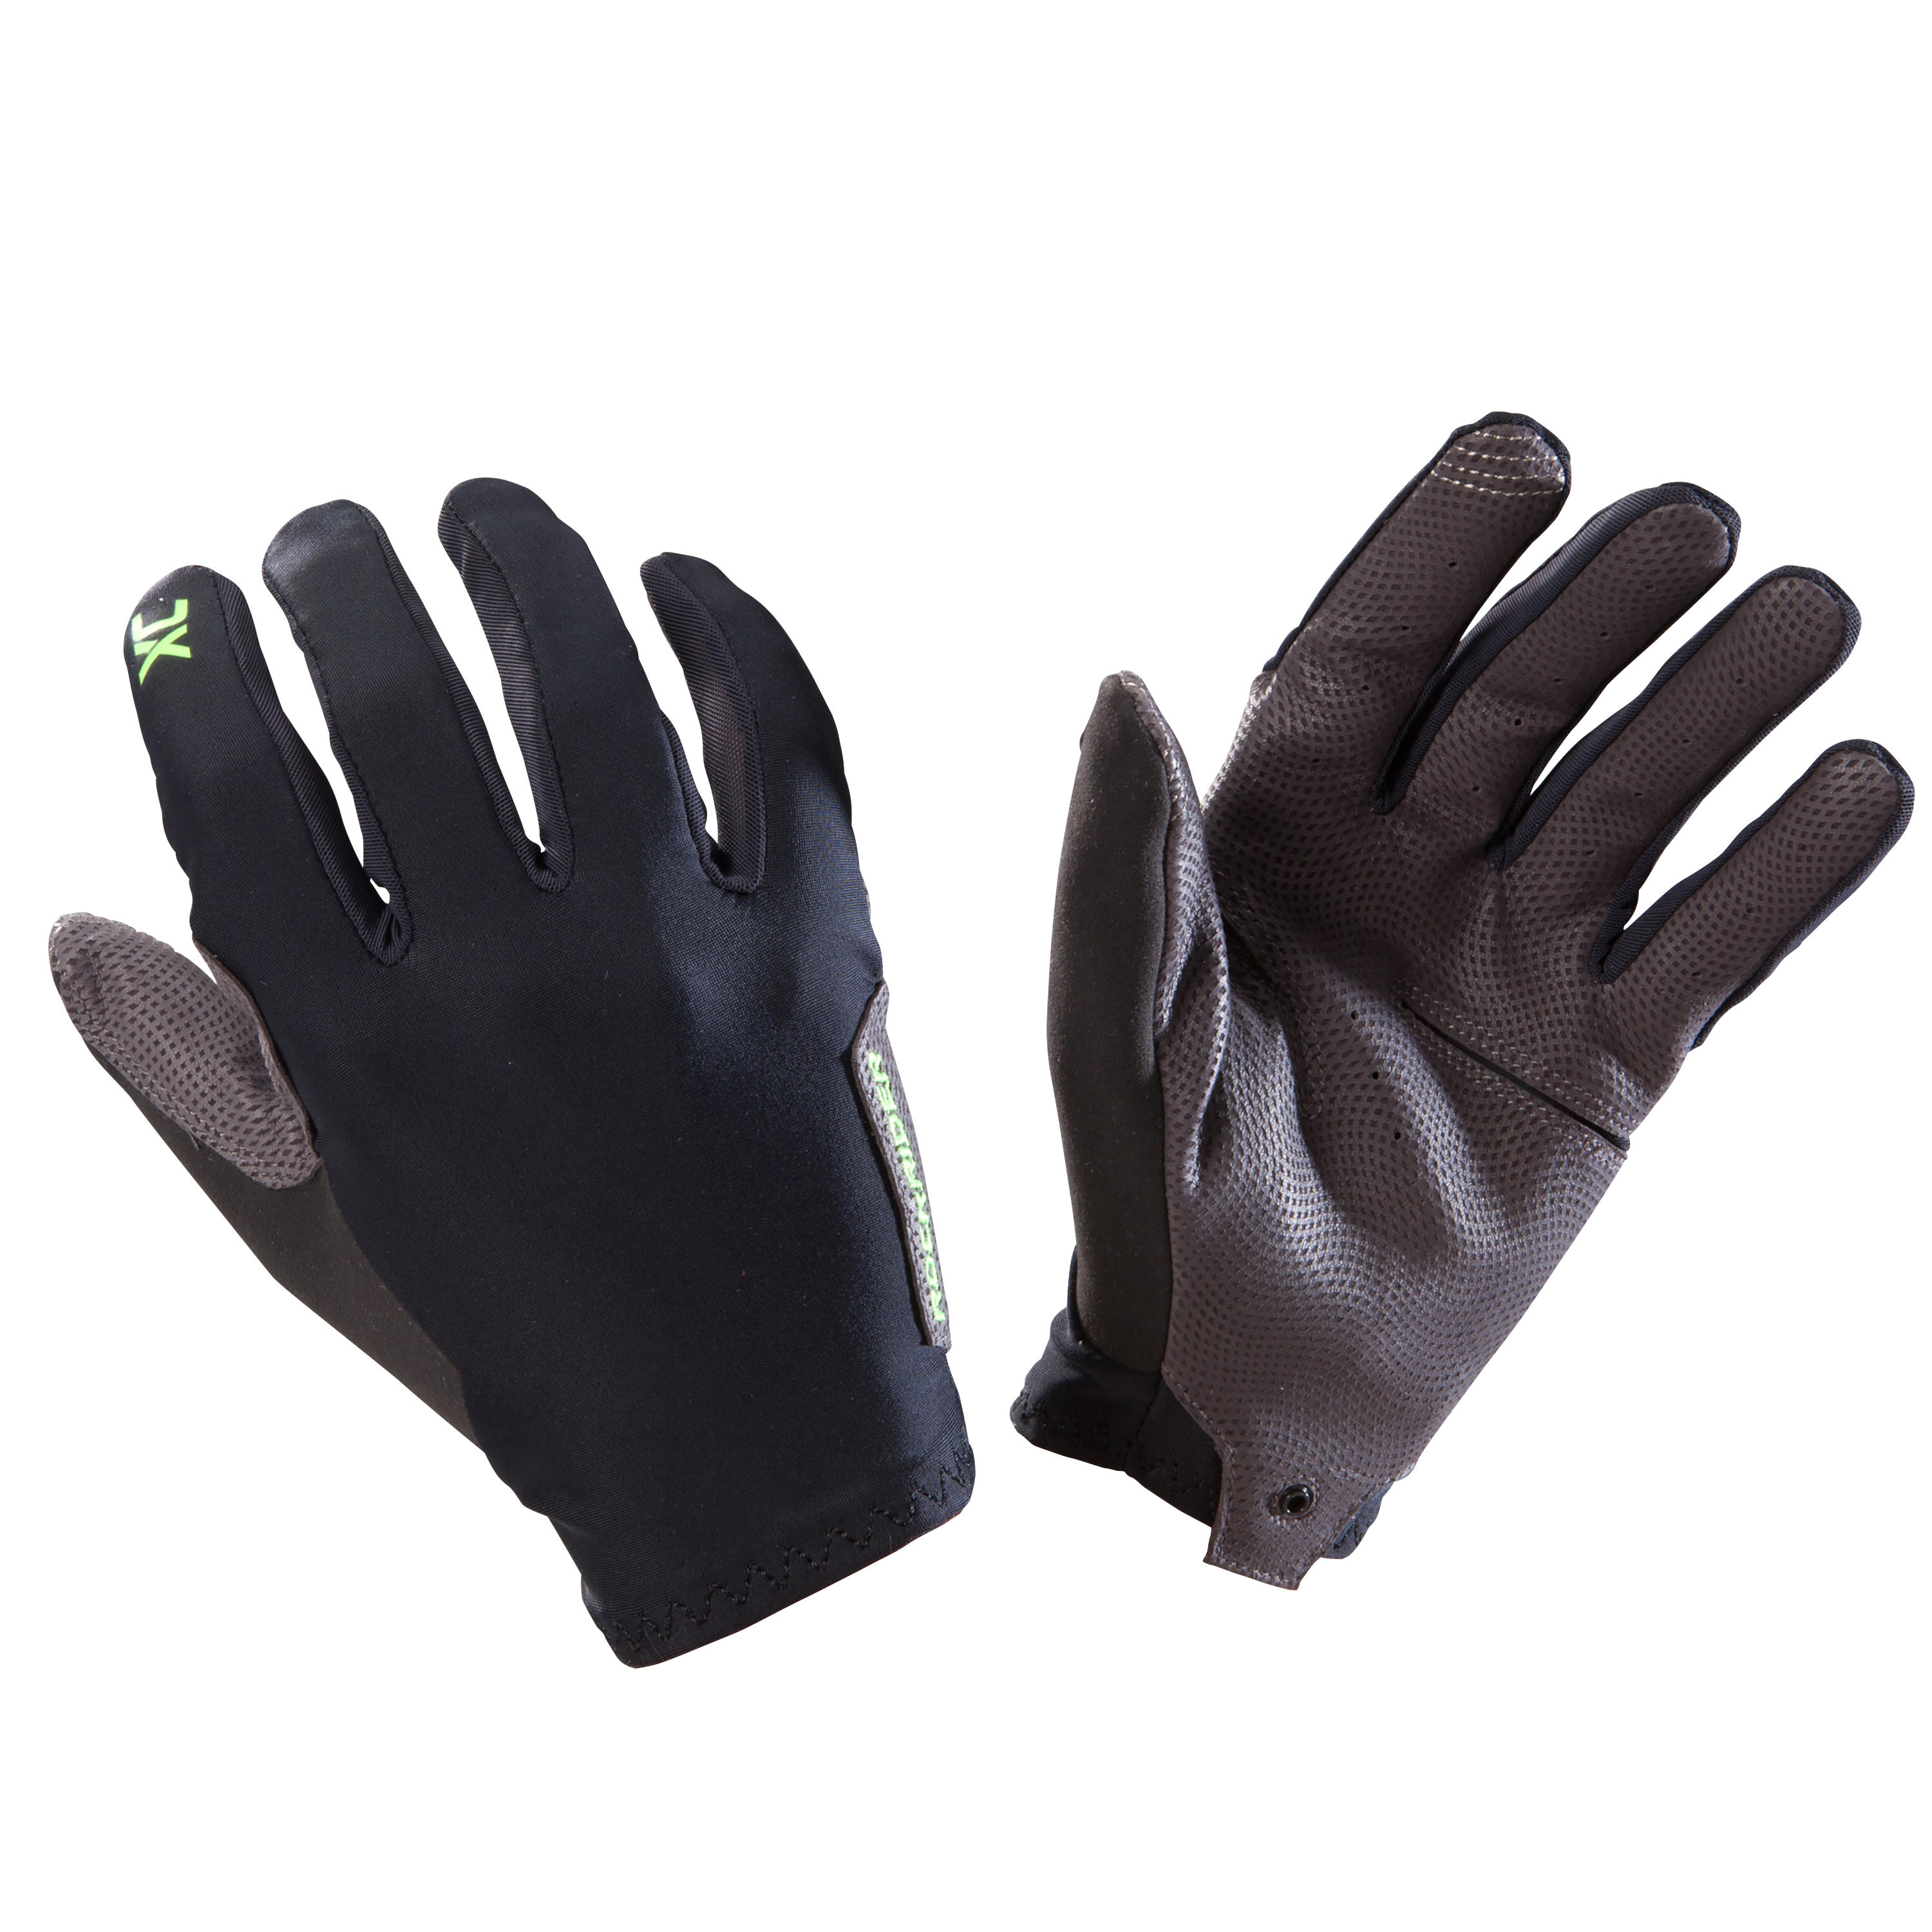 Light XC Mountain Bike Gloves - Black 2/4